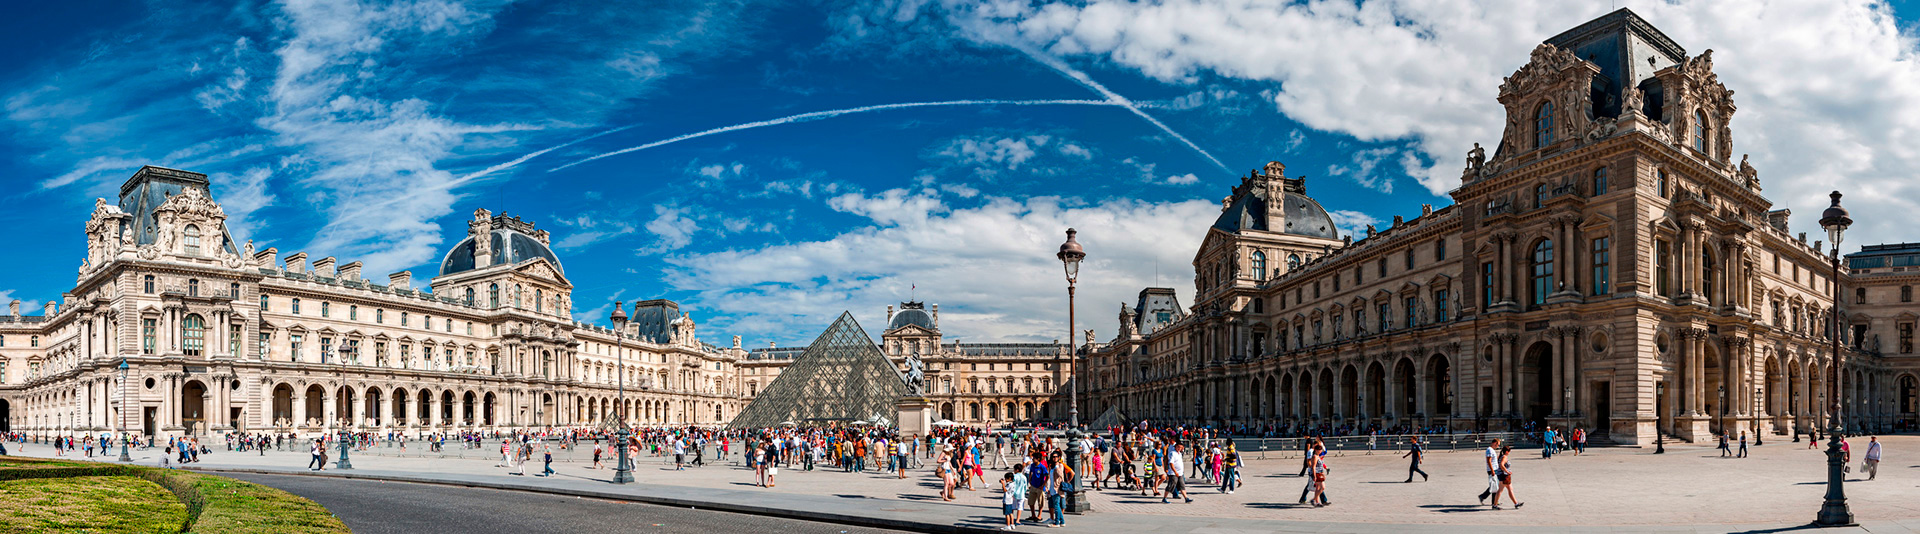 Louvre family tour treasure hunt